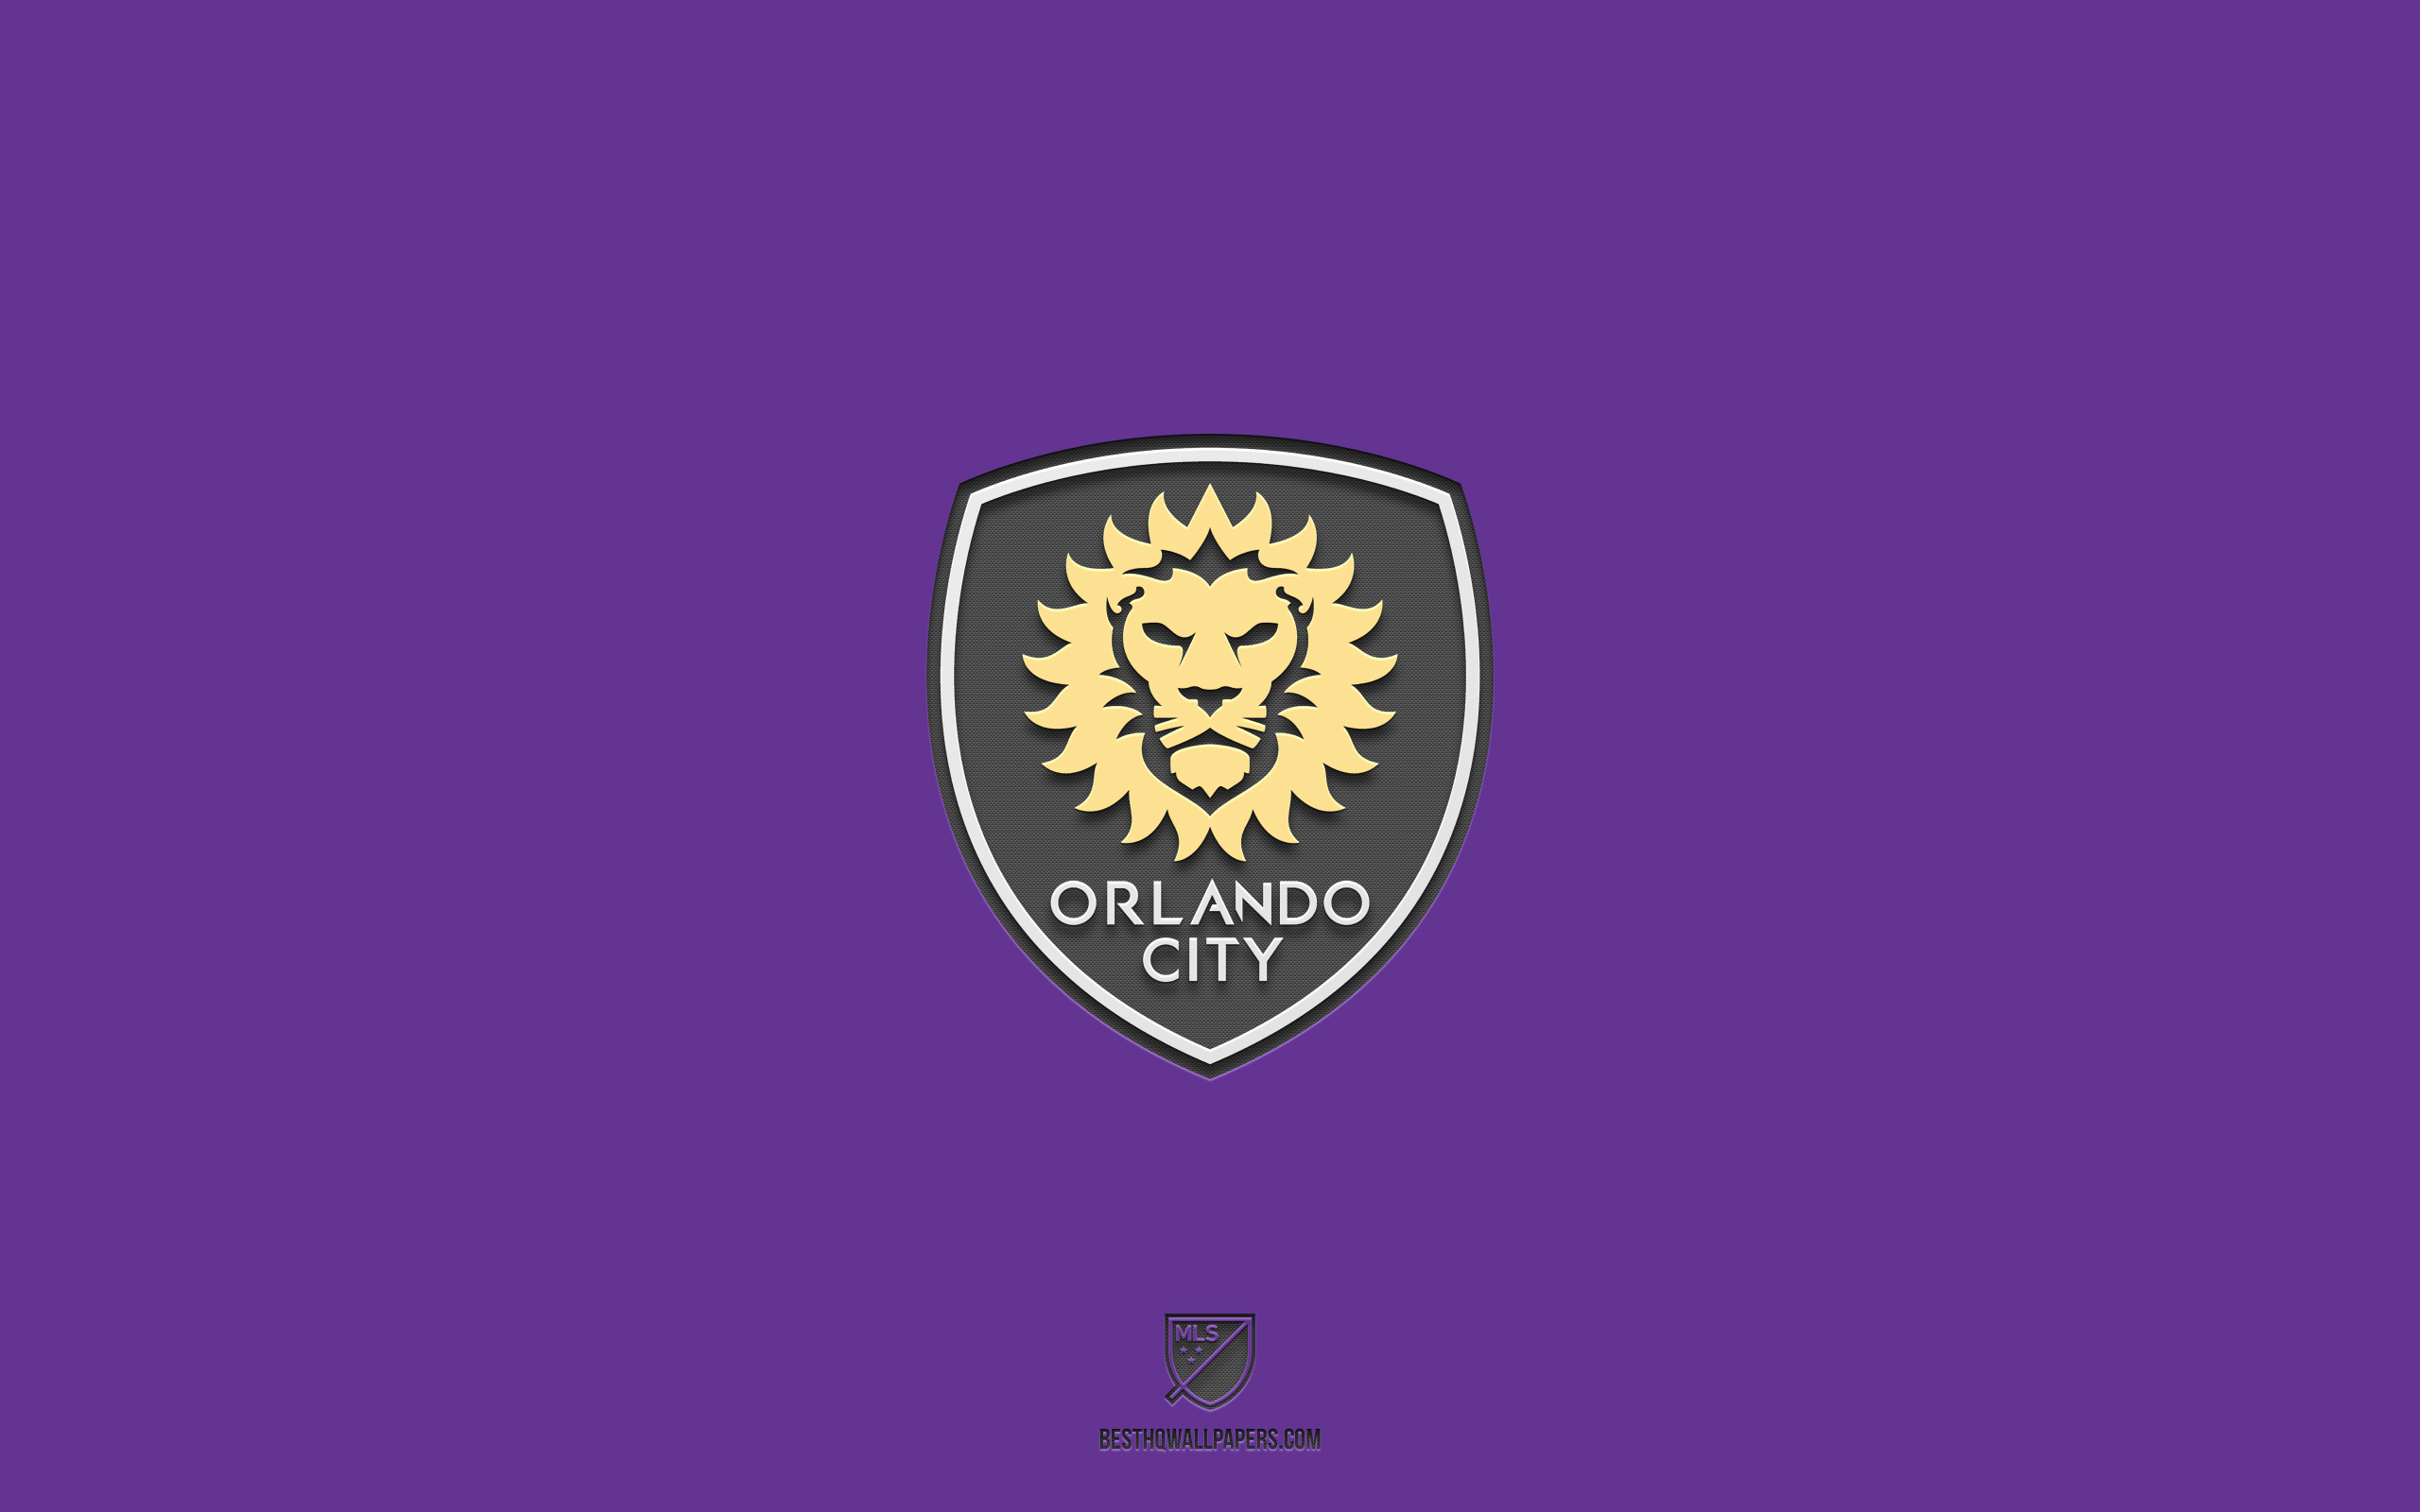 ダウンロード画像 オーランドシティsc 紫の背景 アメリカのサッカーチーム オーランドシティscエンブレム Mls 番号 オーランドシティ 米国 サッカー オーランドシティscのロゴ 画面の解像度 2560x1600 壁紙デスクトップ上